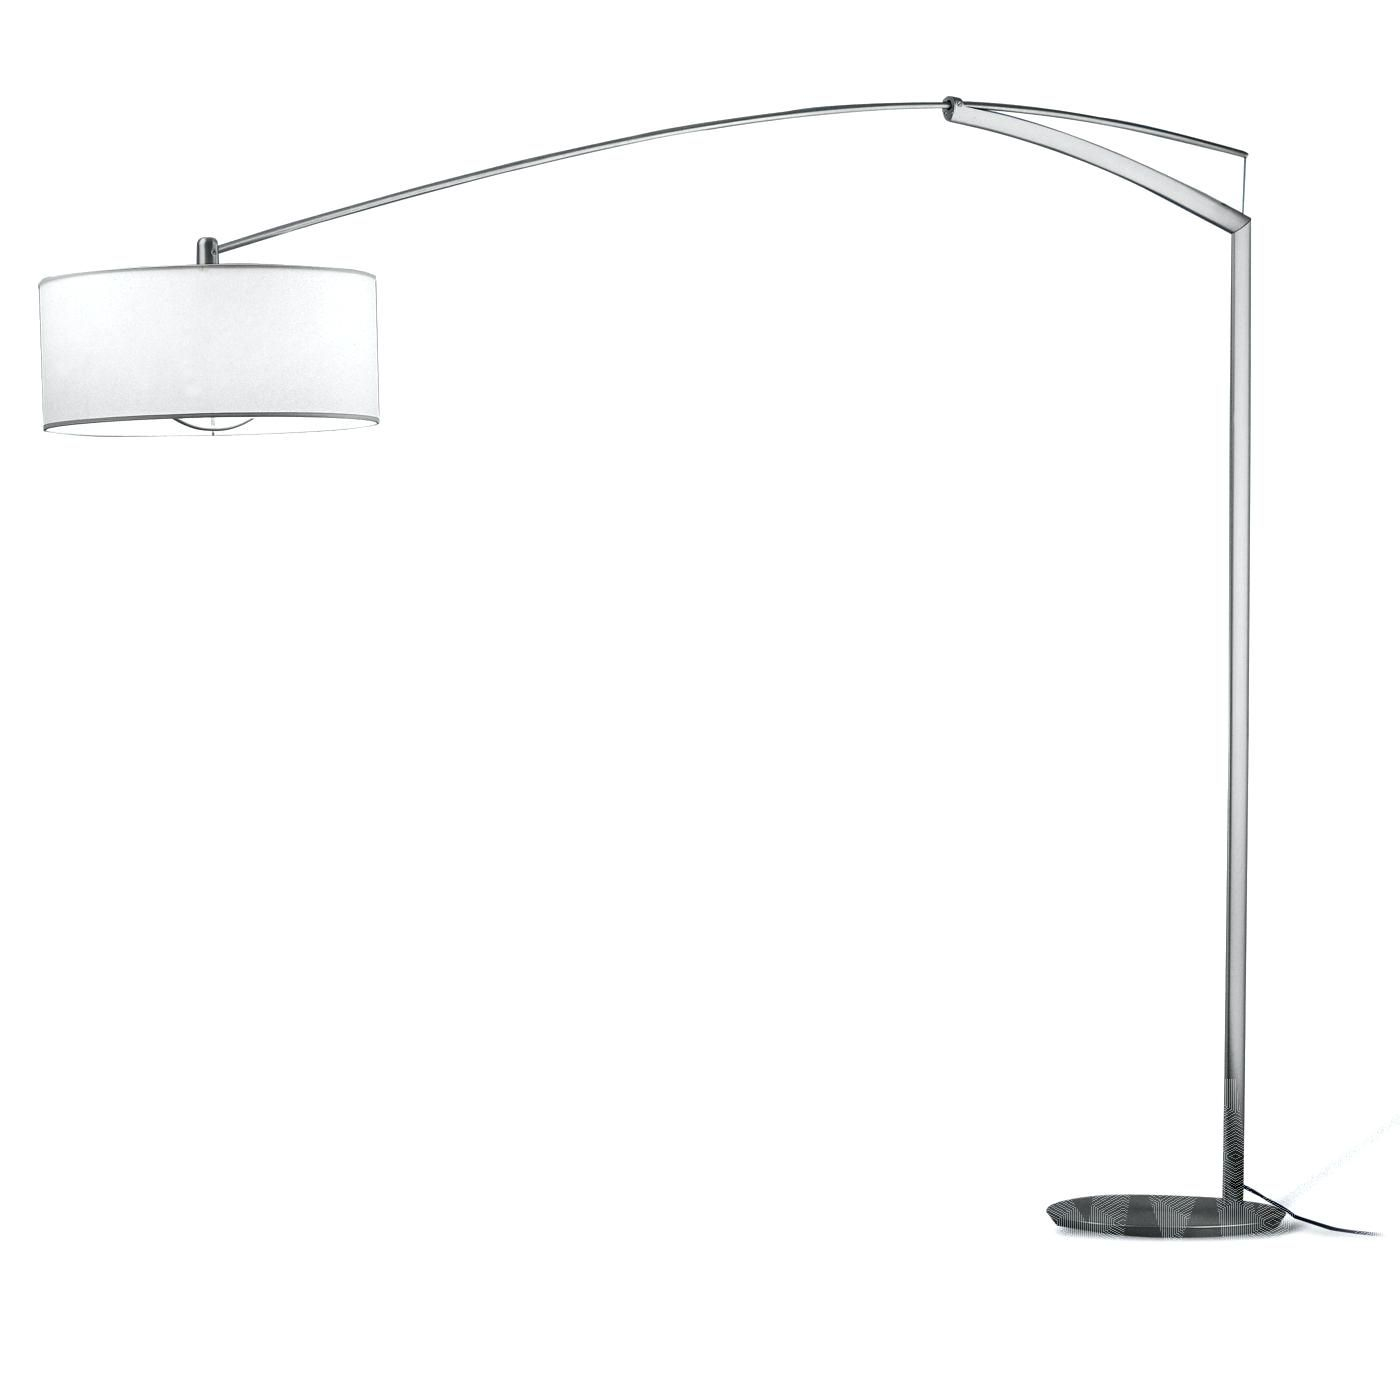 Large Floor Lamps Uk Kai Arc Lamp Grey Shade Interior Decor within sizing 1400 X 1400